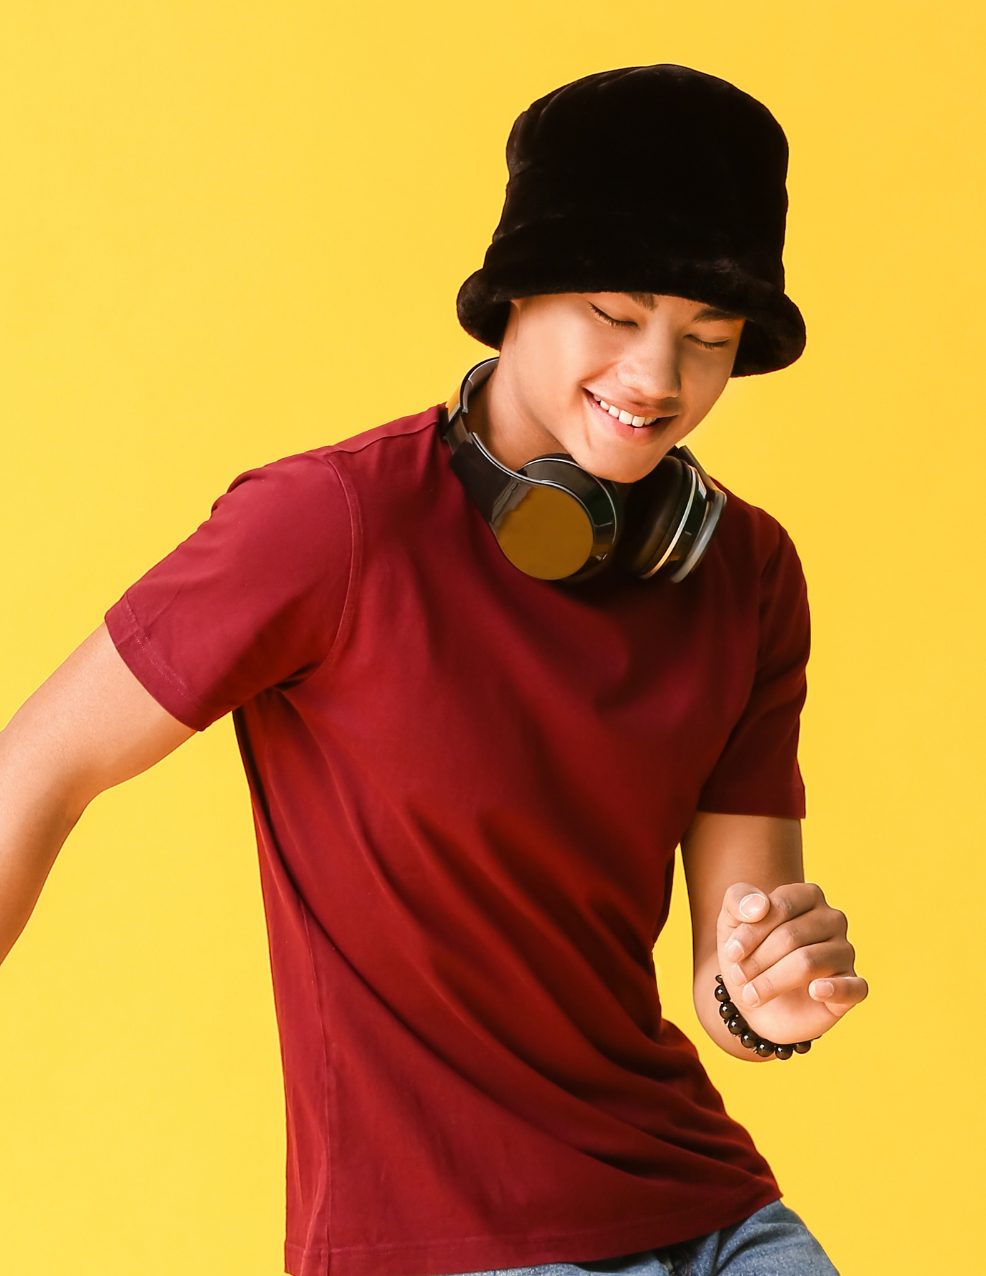 dancing boy with headphones and bucket hat